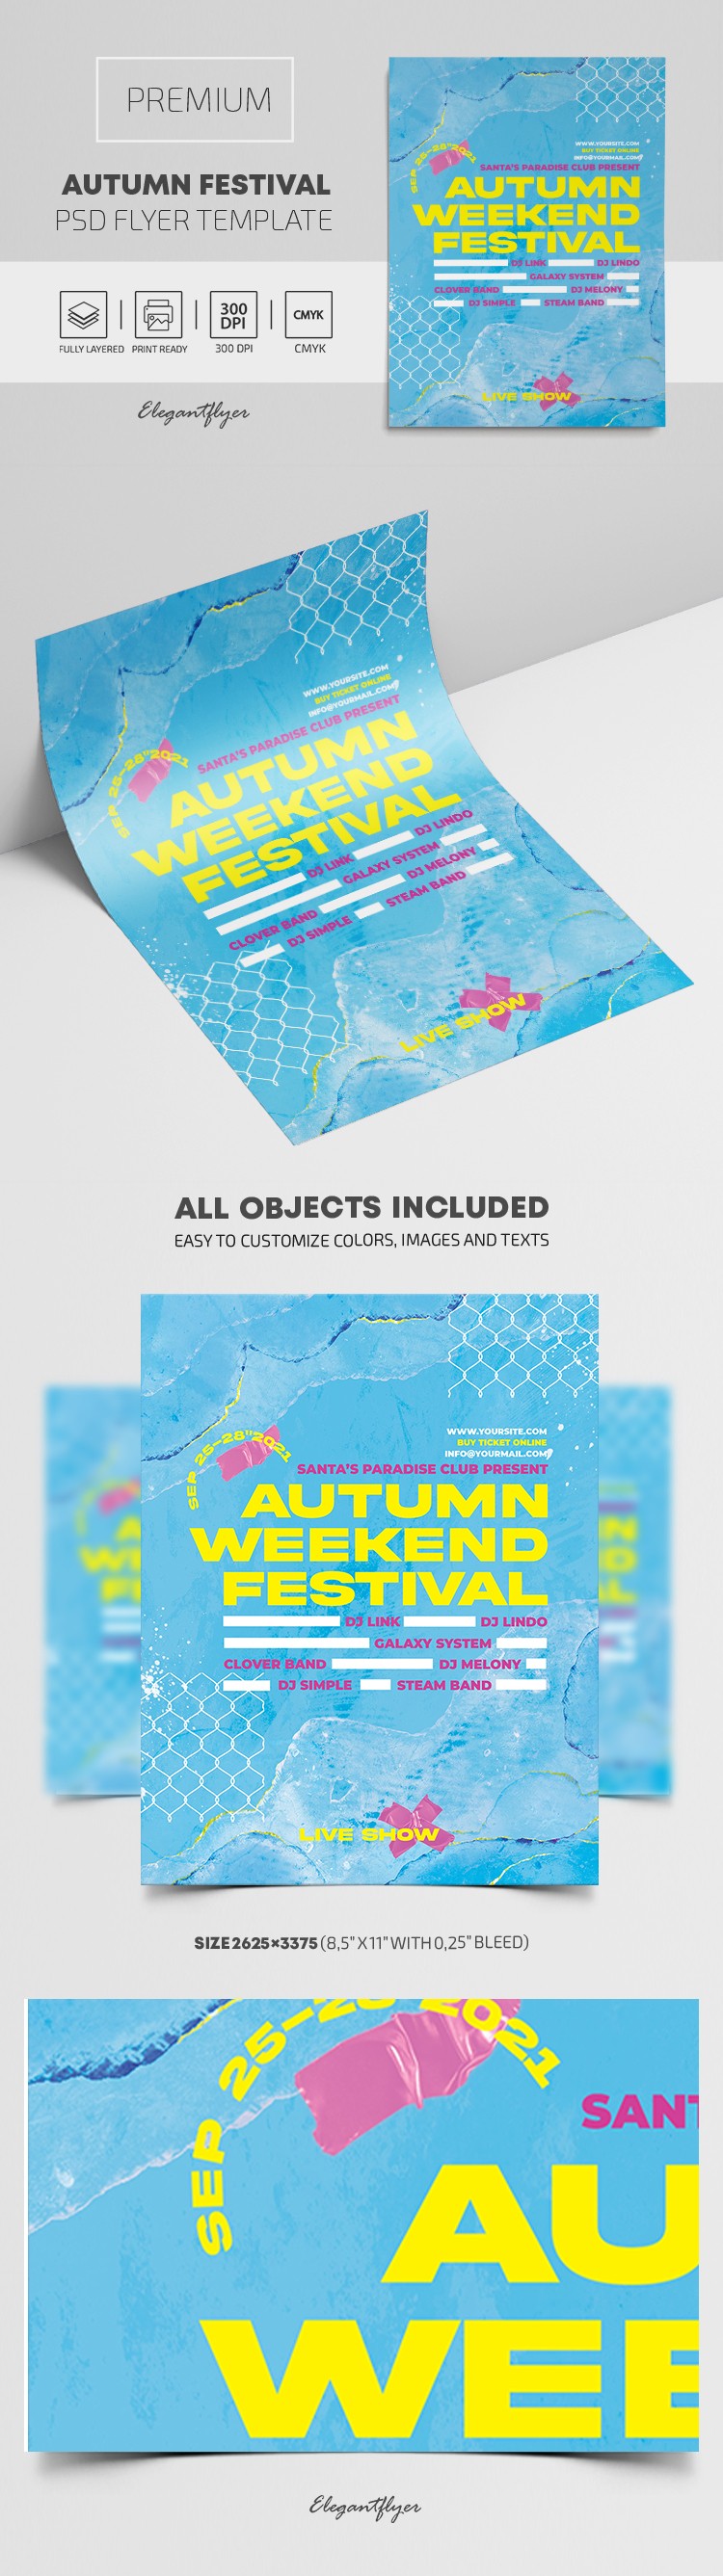 Autumn Festival Flyer by ElegantFlyer